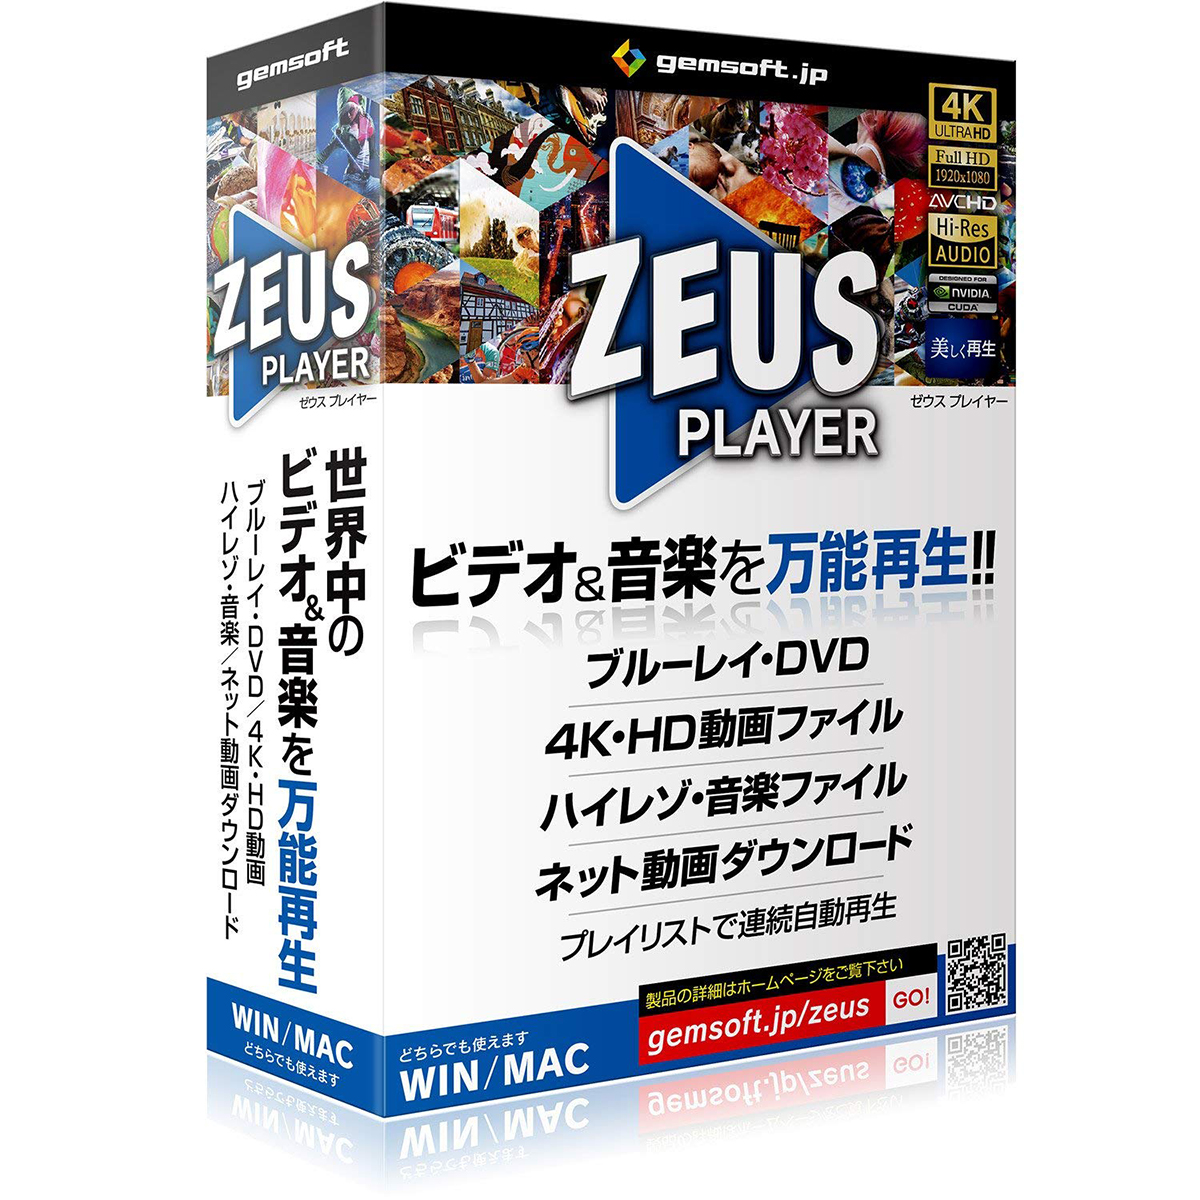 ZEUS PLAYER(ブルーレイ・DVD・4Kビデオ・ハイレゾ音源再生ソフト) [GG-Z001]